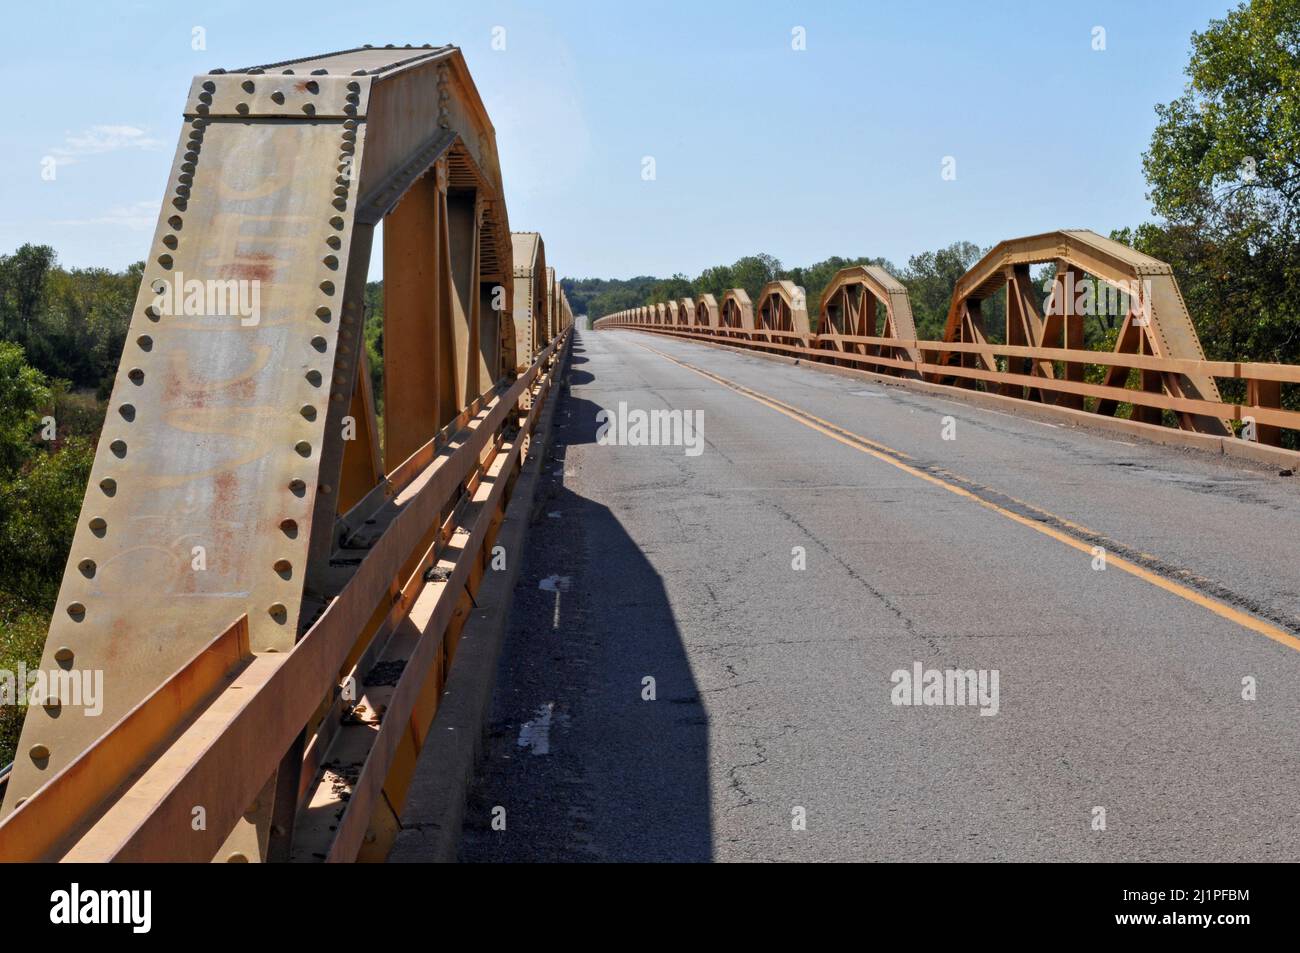 Die Wahrzeichen William H. Murray Bridge oder Pony Bridge auf der Route 66 in der Nähe von Bridgeport, OK, ist eine der längsten Brücken auf der berühmten America Road. Stockfoto